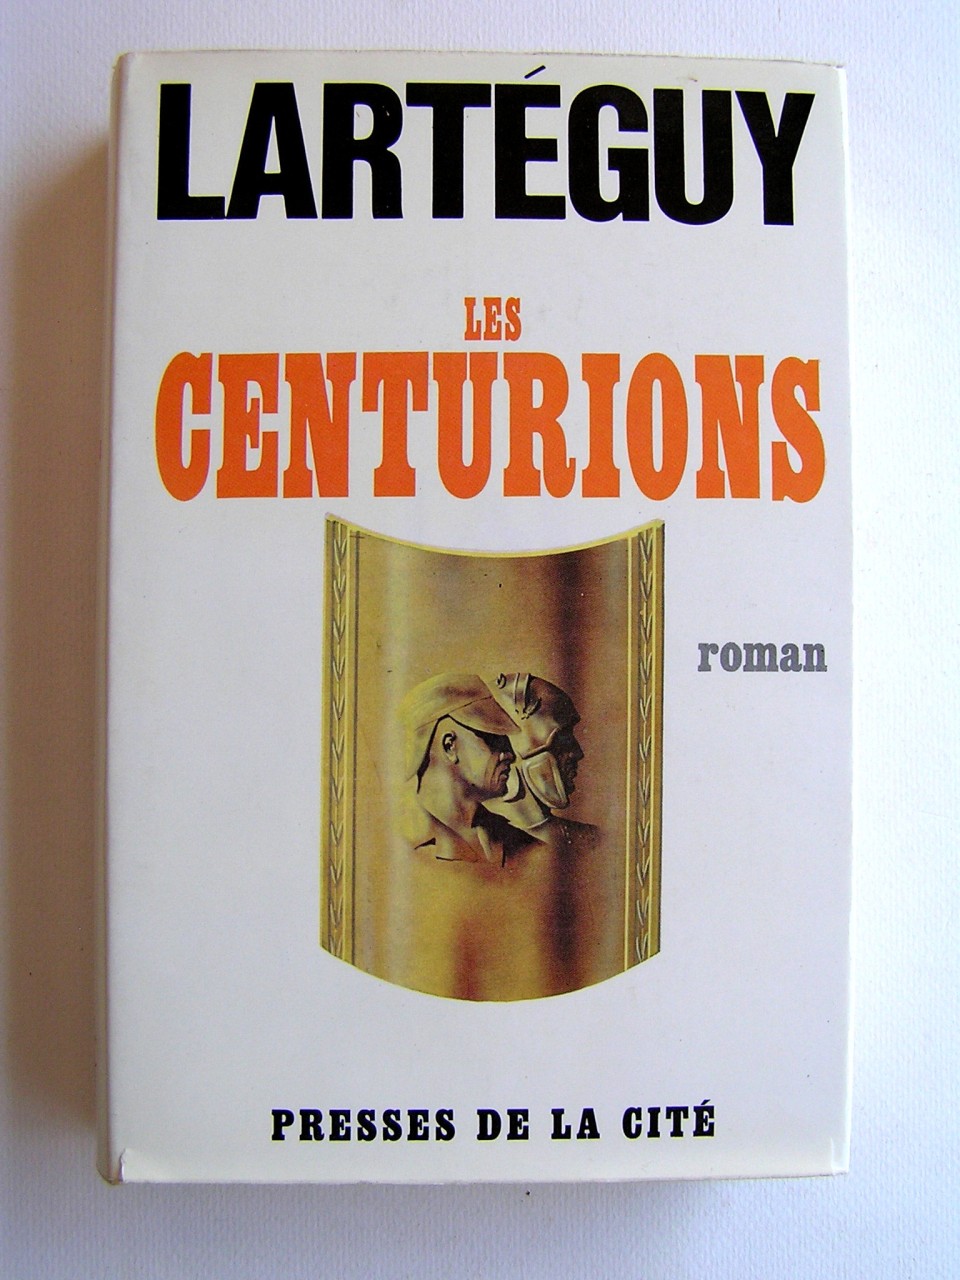  LES CENTURIONS 
---- 
Jean LARTEGUY
